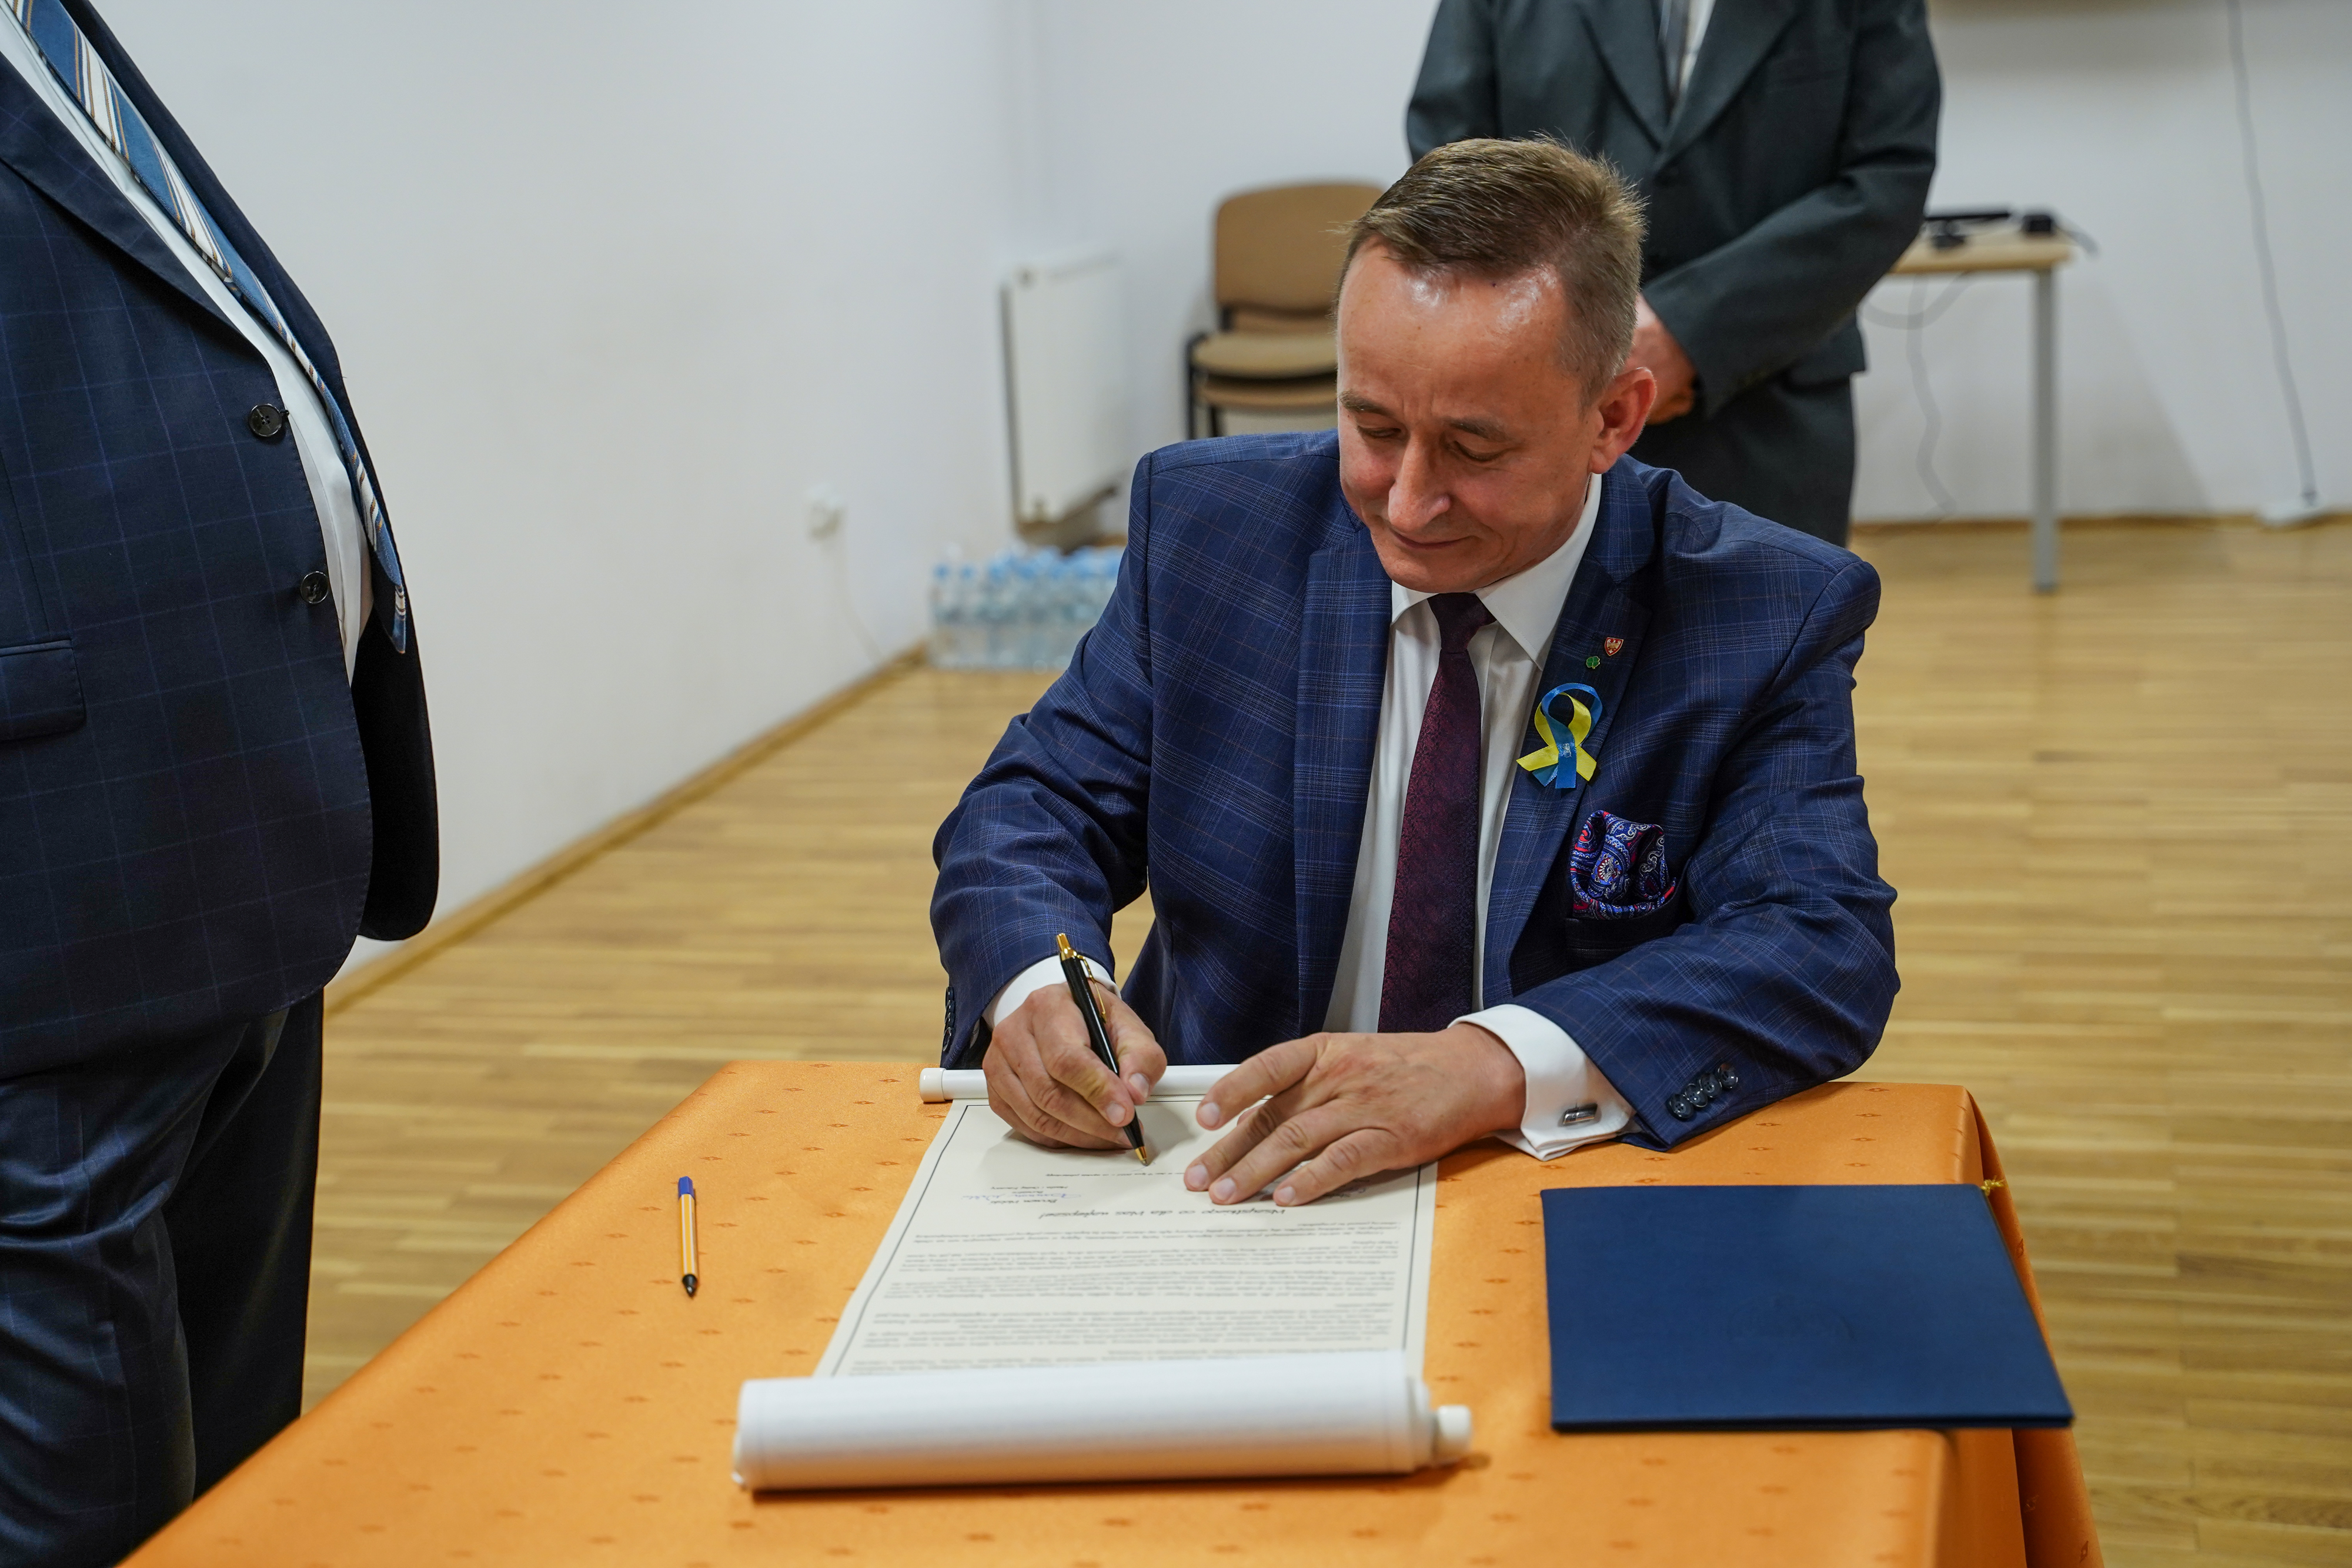 Na zdjęciu widać podpisującego się na liście wiceprzewodniczący Sejmiku Województwa Wielkopolskiego - Pan Jarosław Maciejewski.